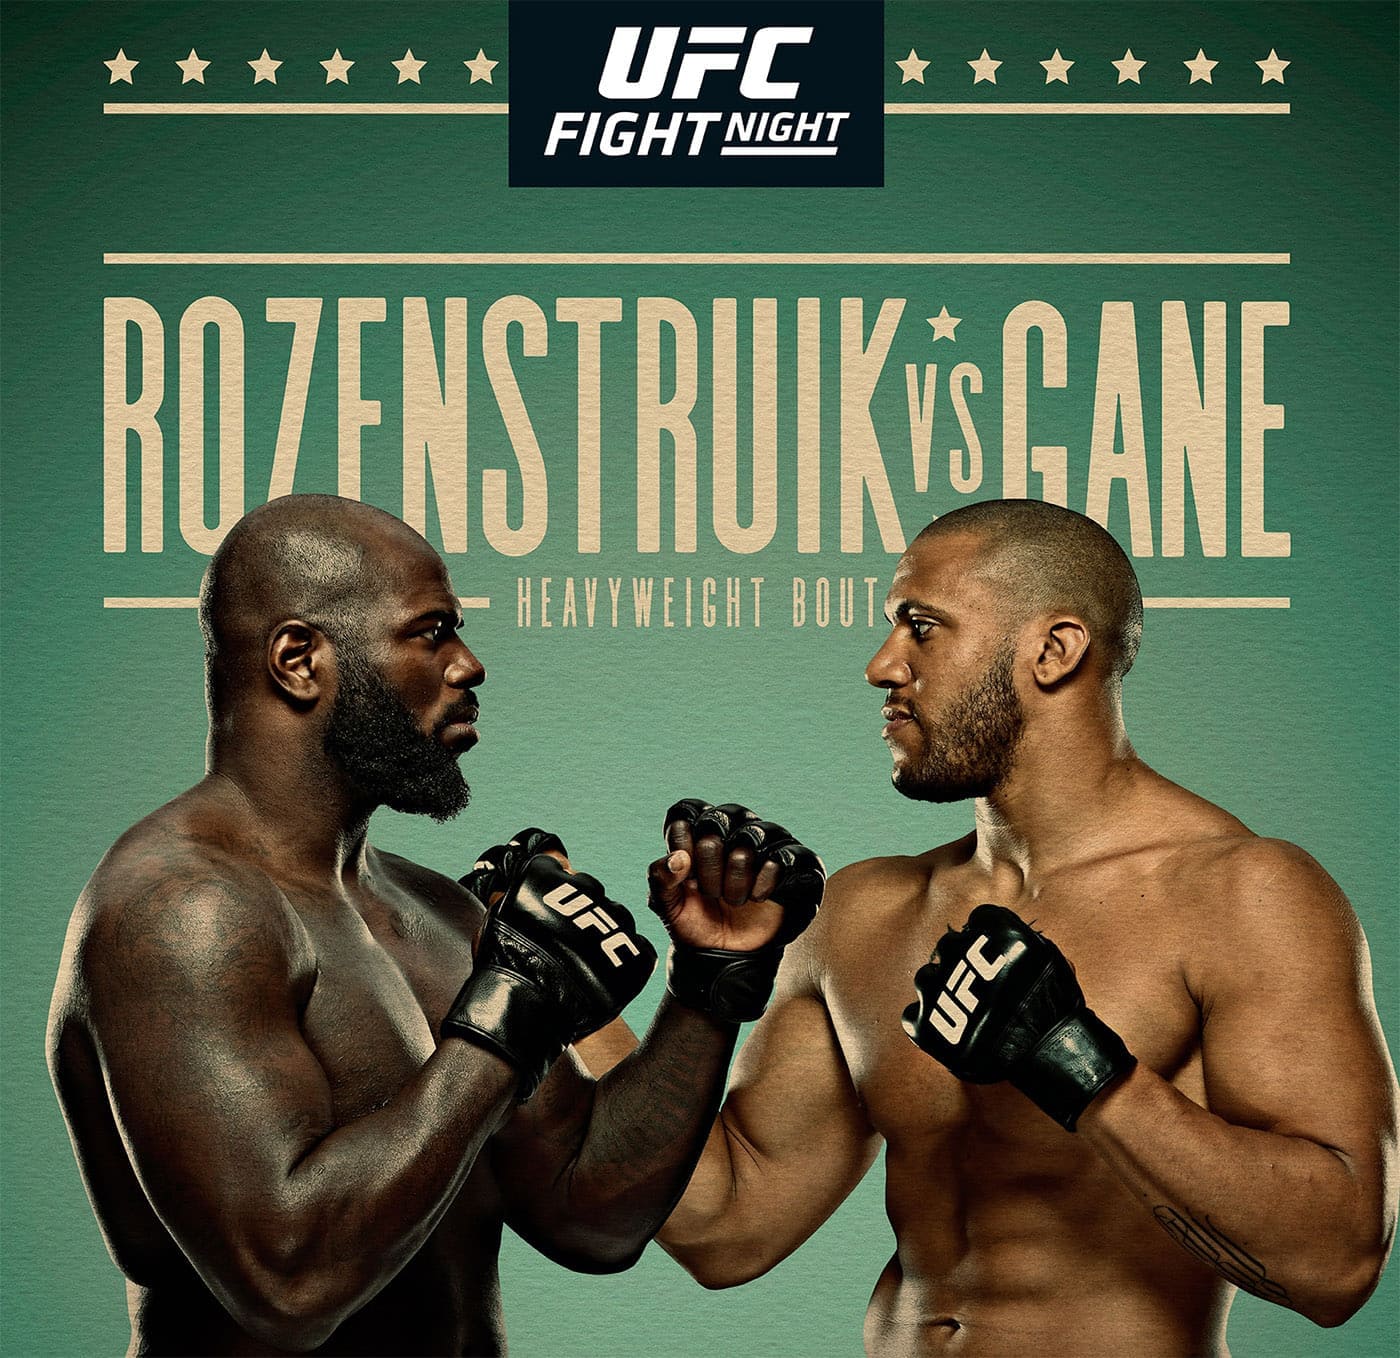 UFC Fight Night 186: Розенстрайк - Ган дата проведения, кард, участники и результаты